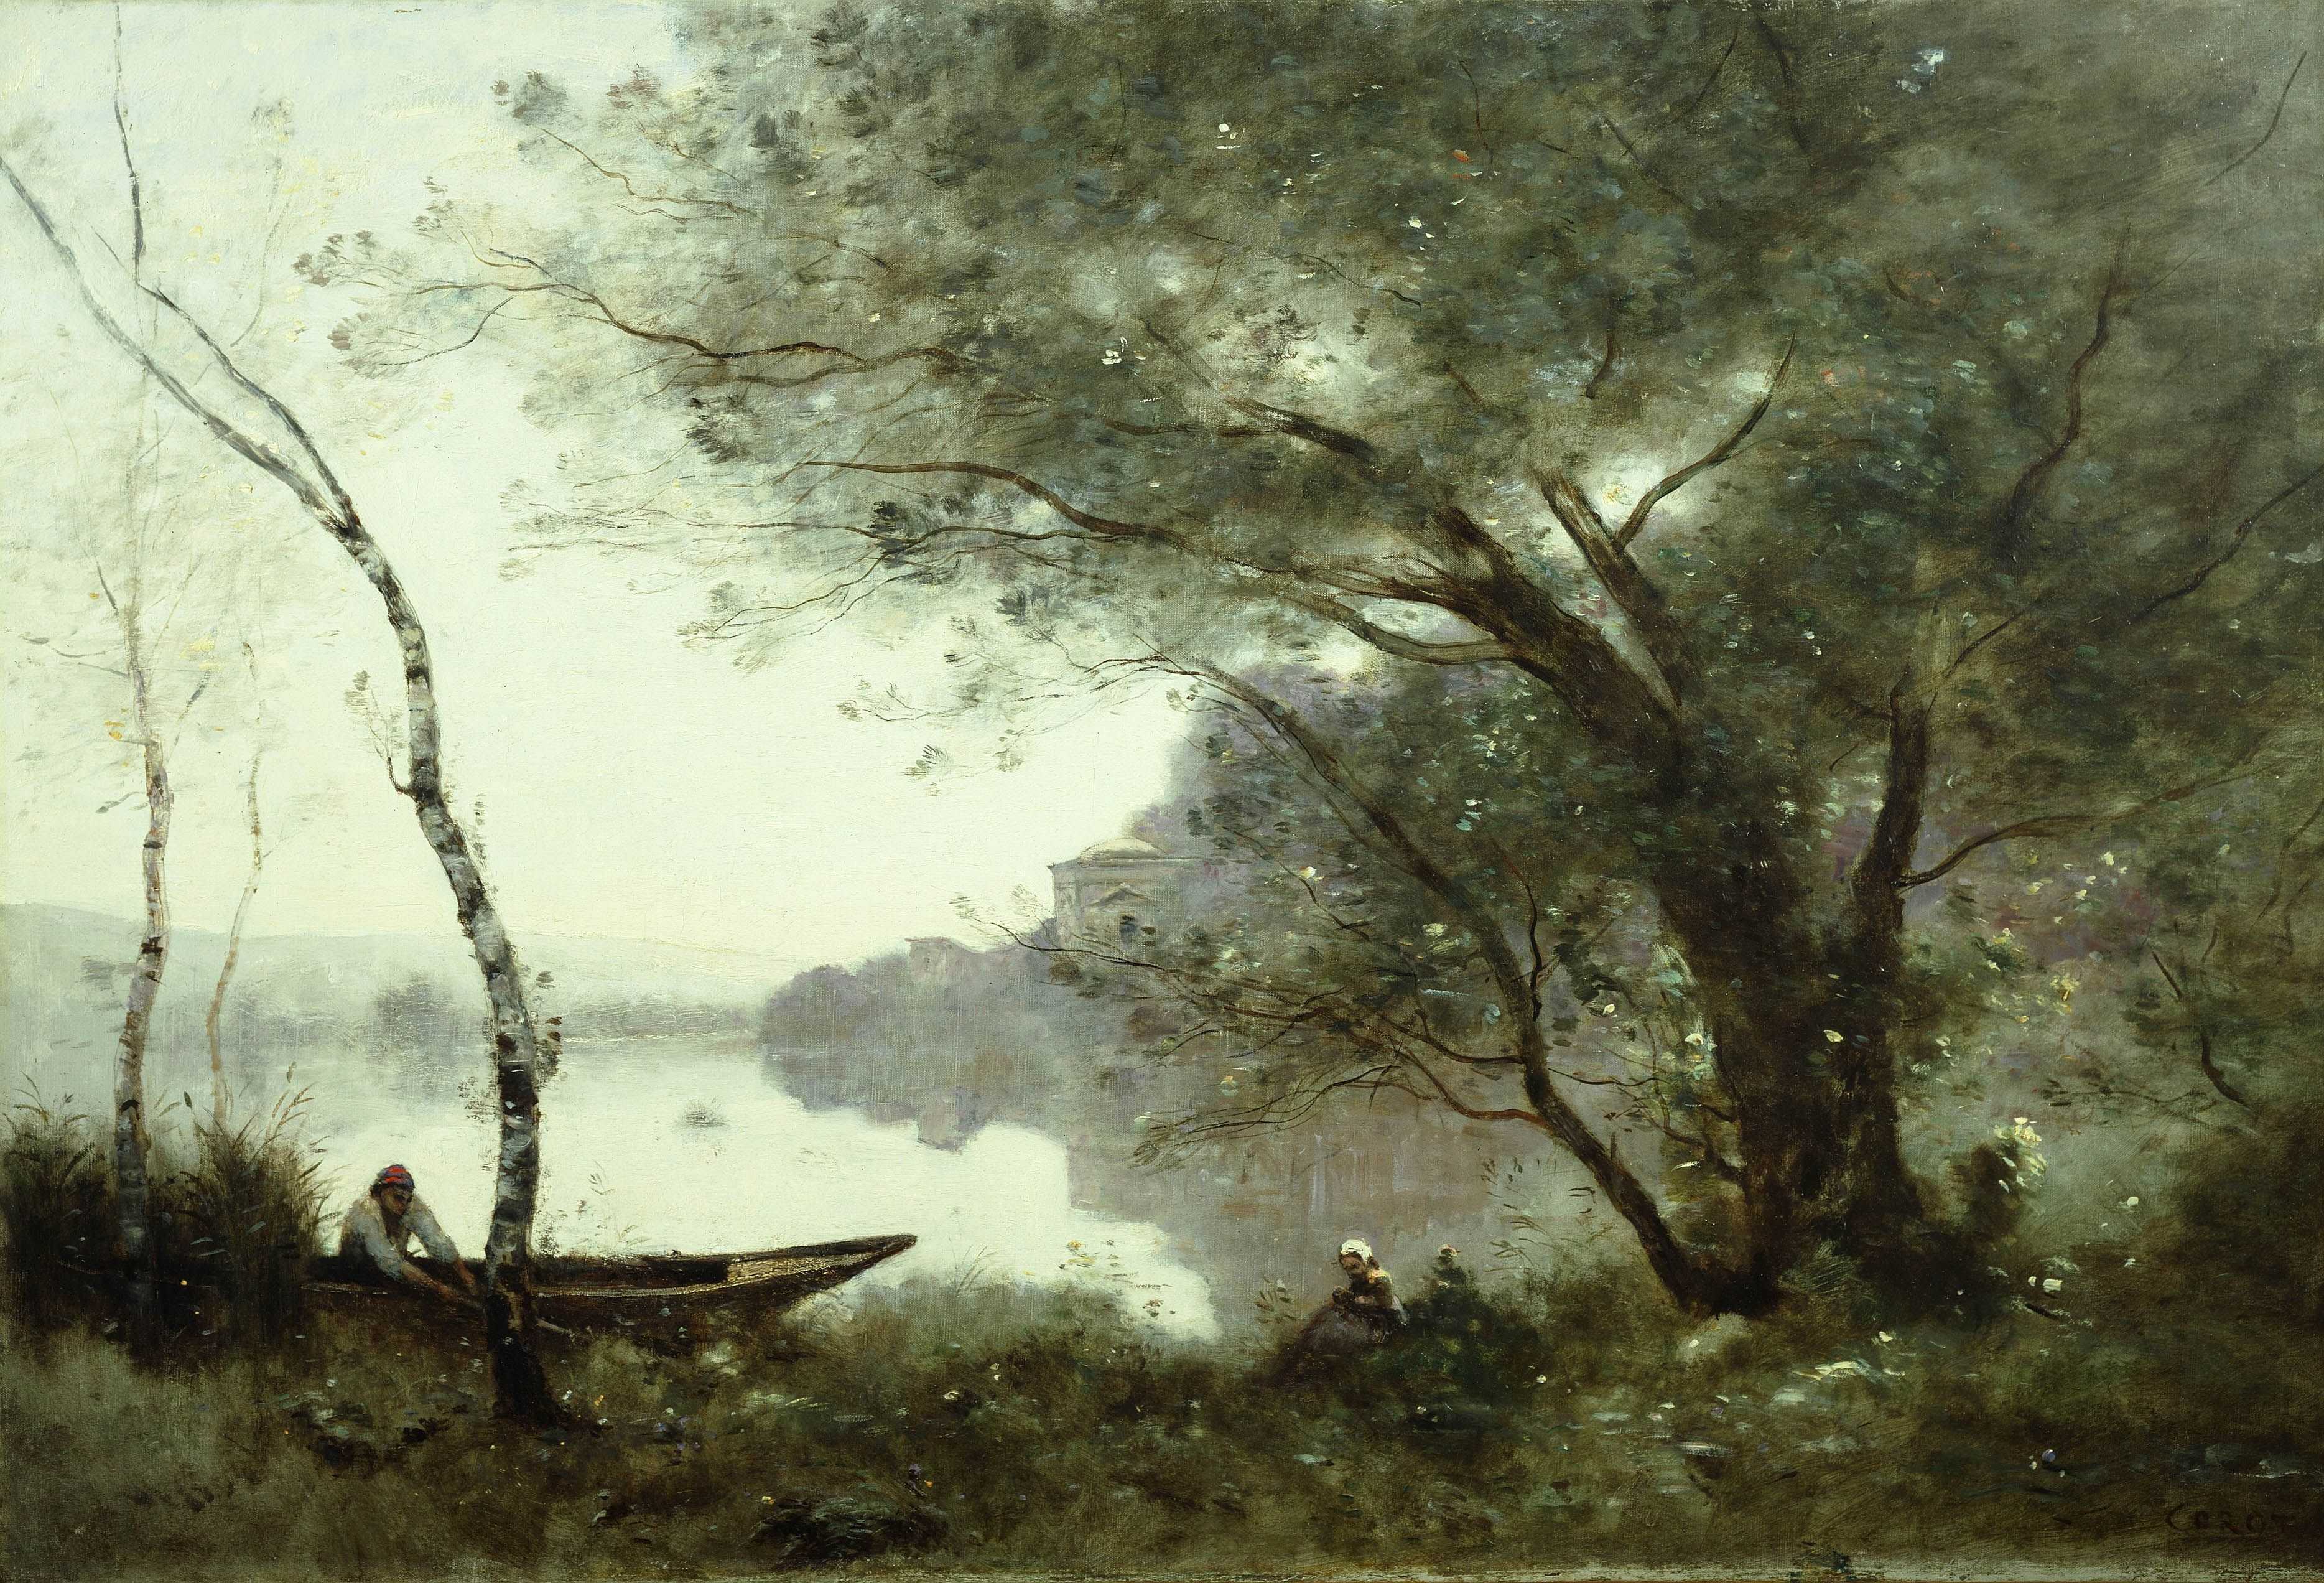 《孟特芳丹的船夫》,柯罗,约1865年至1870年.  显示全部